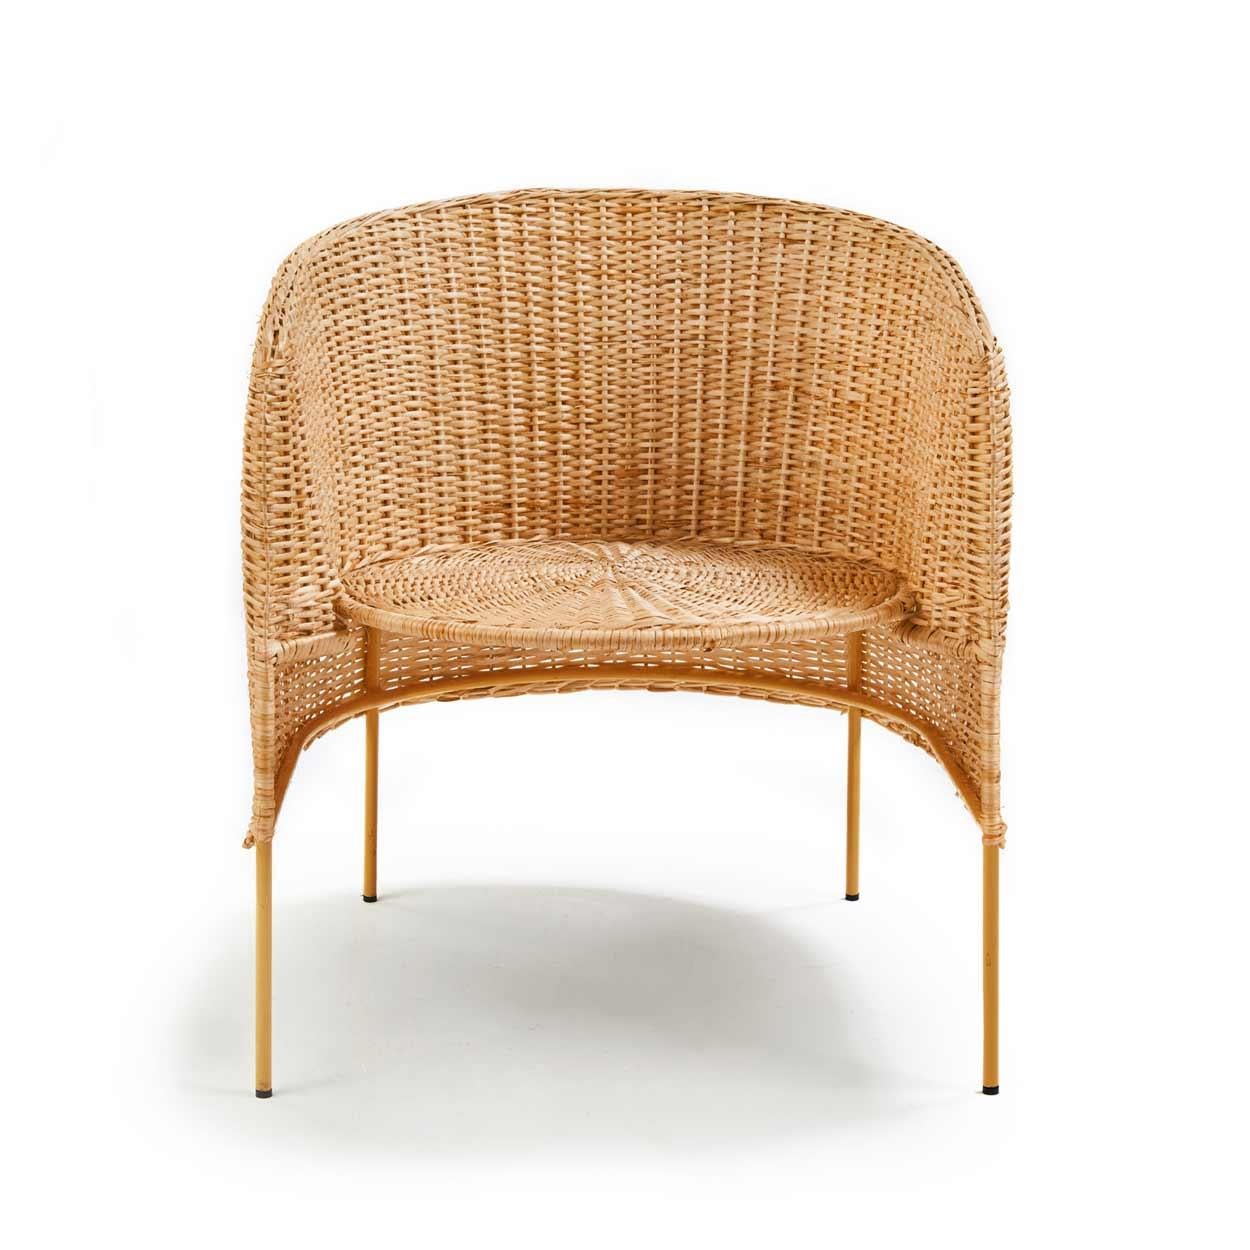 Material
Weidenruten aus Bejuco-Wurzeln. Galvanisiertes und pulverbeschichtetes Stahlrohrgestell
Der Caribe Natural Lounge Chair ist ein Entwurf von Sebastian Herkner, der sich durch ein wunderschönes Flechtwerk auszeichnet. Die Form des Stuhls ist